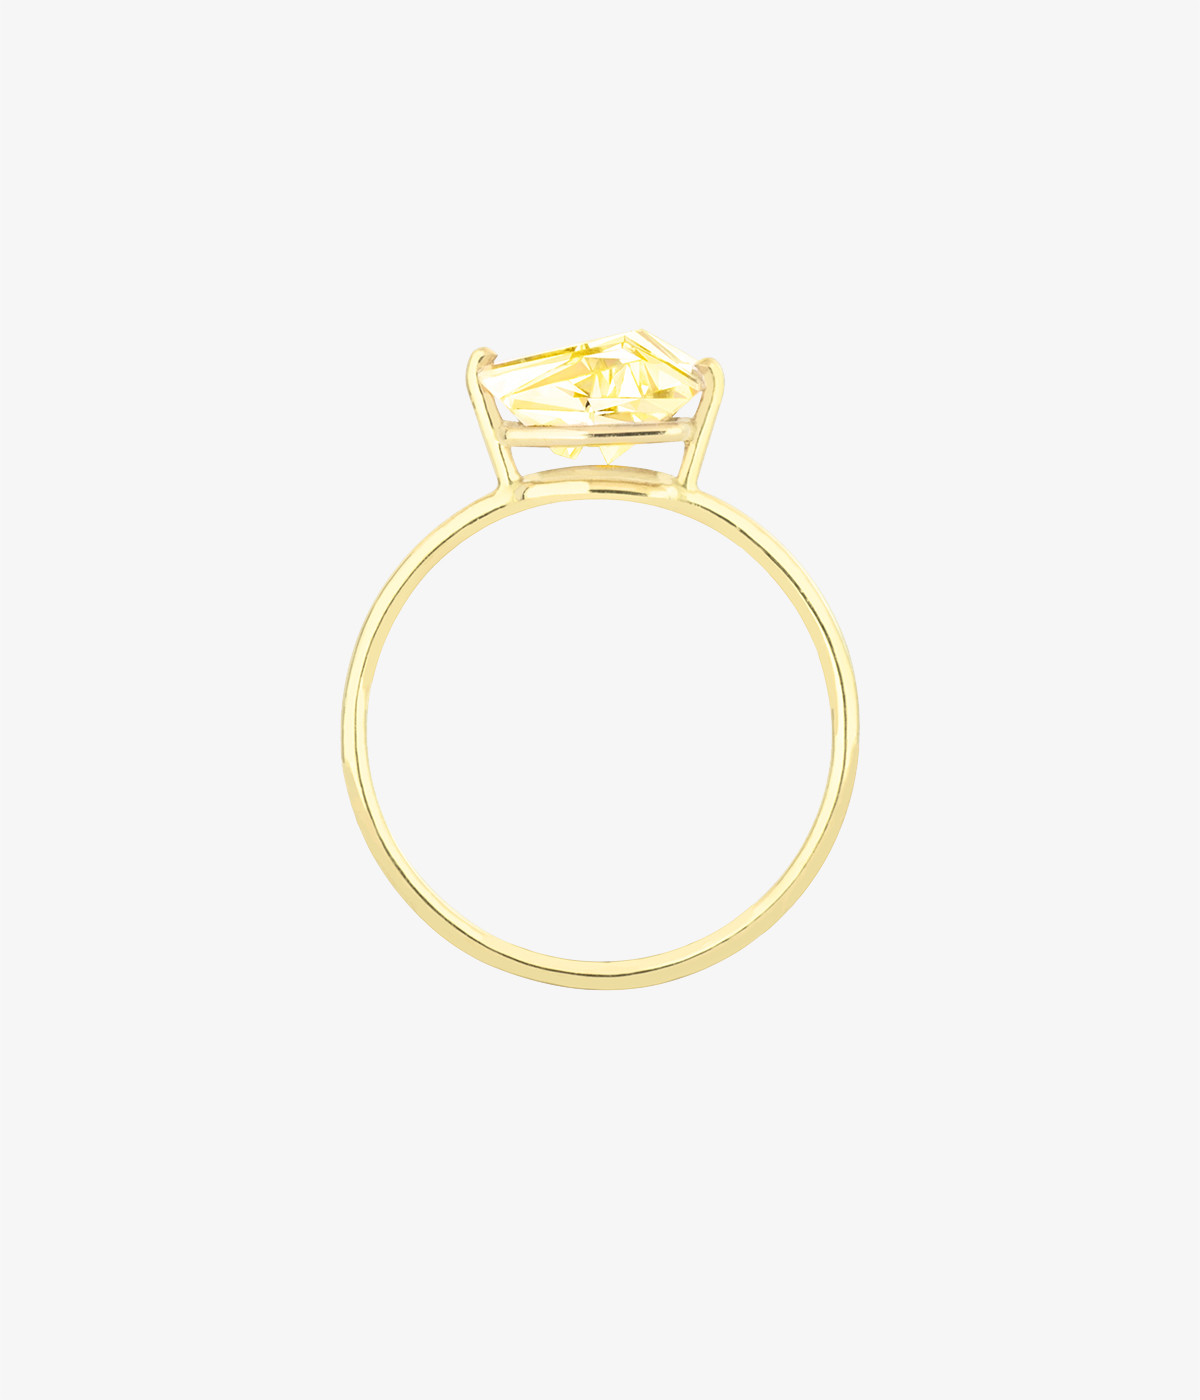 KLAR golden beryl ring